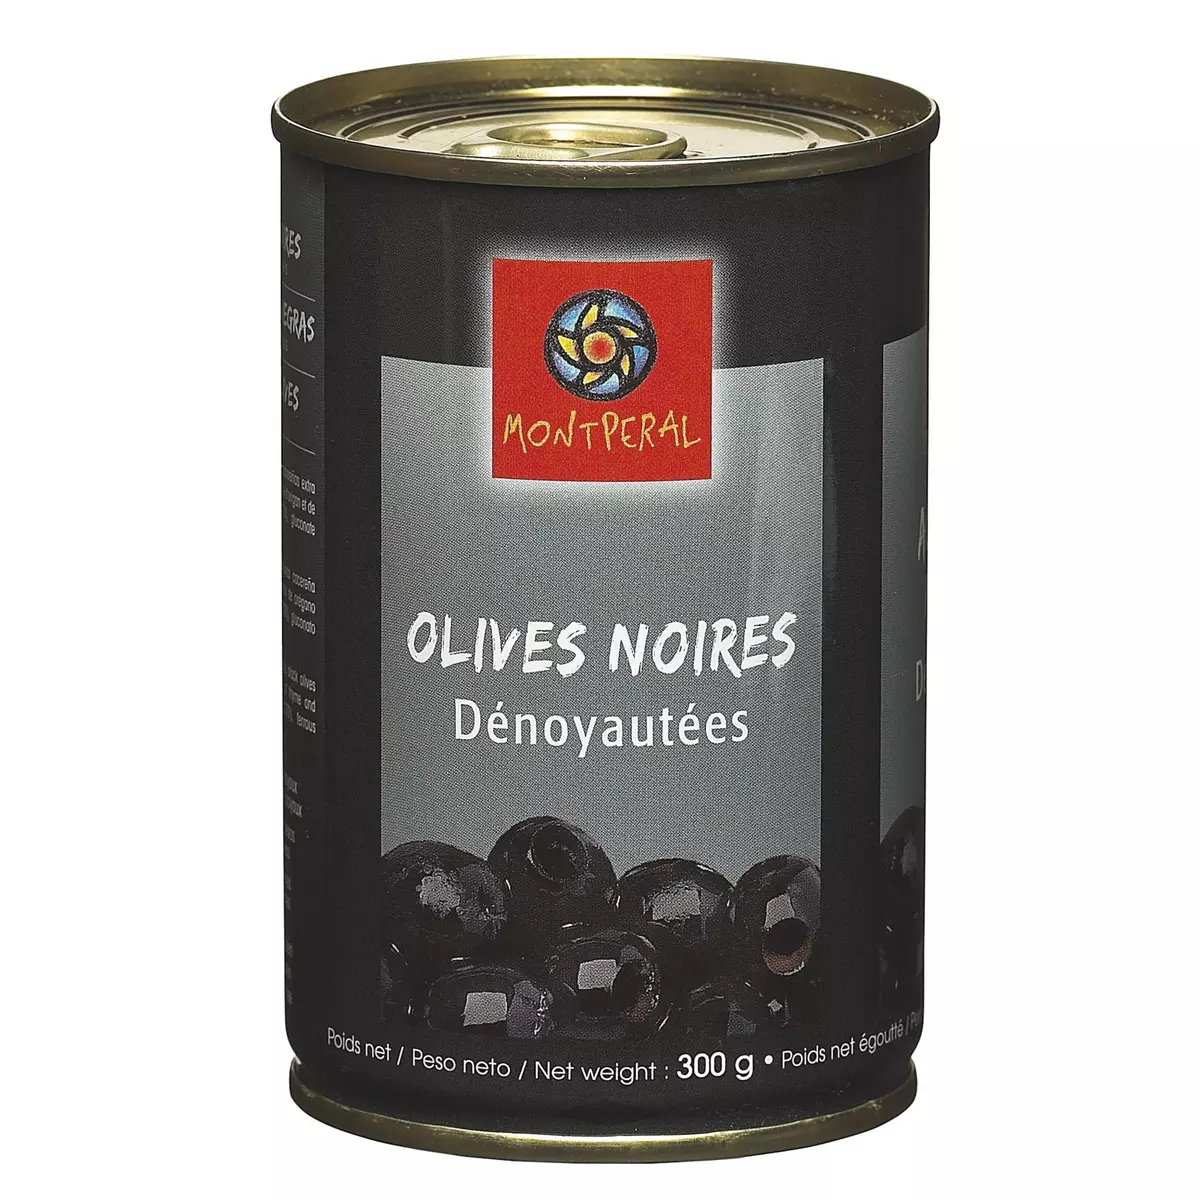 MONTPERAL Olives noires dénoyautées 300g